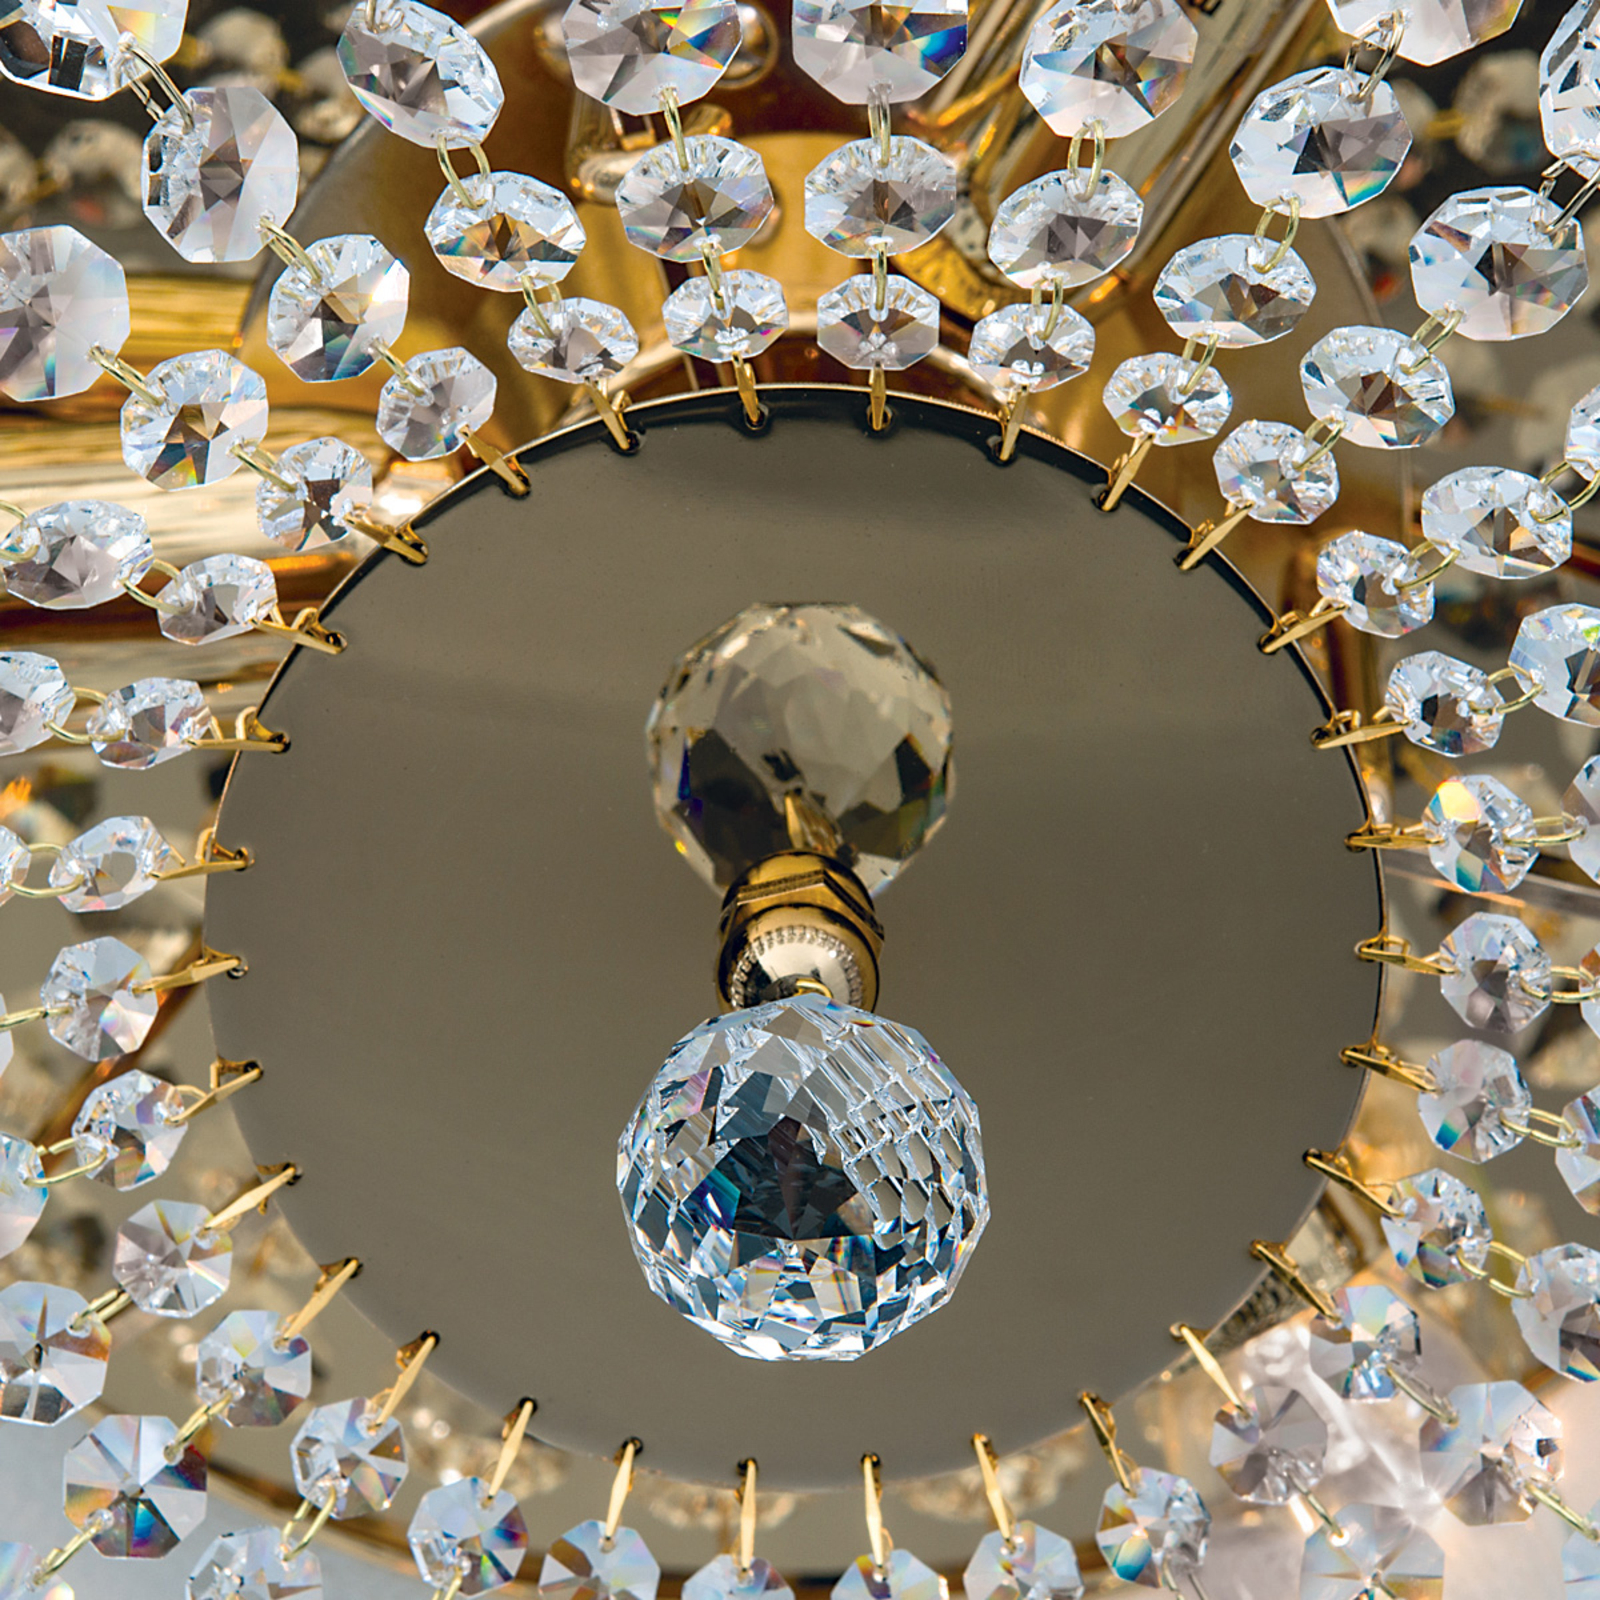 Lampa sufitowa SHERATA okrągła, śr. 35 cm, złota